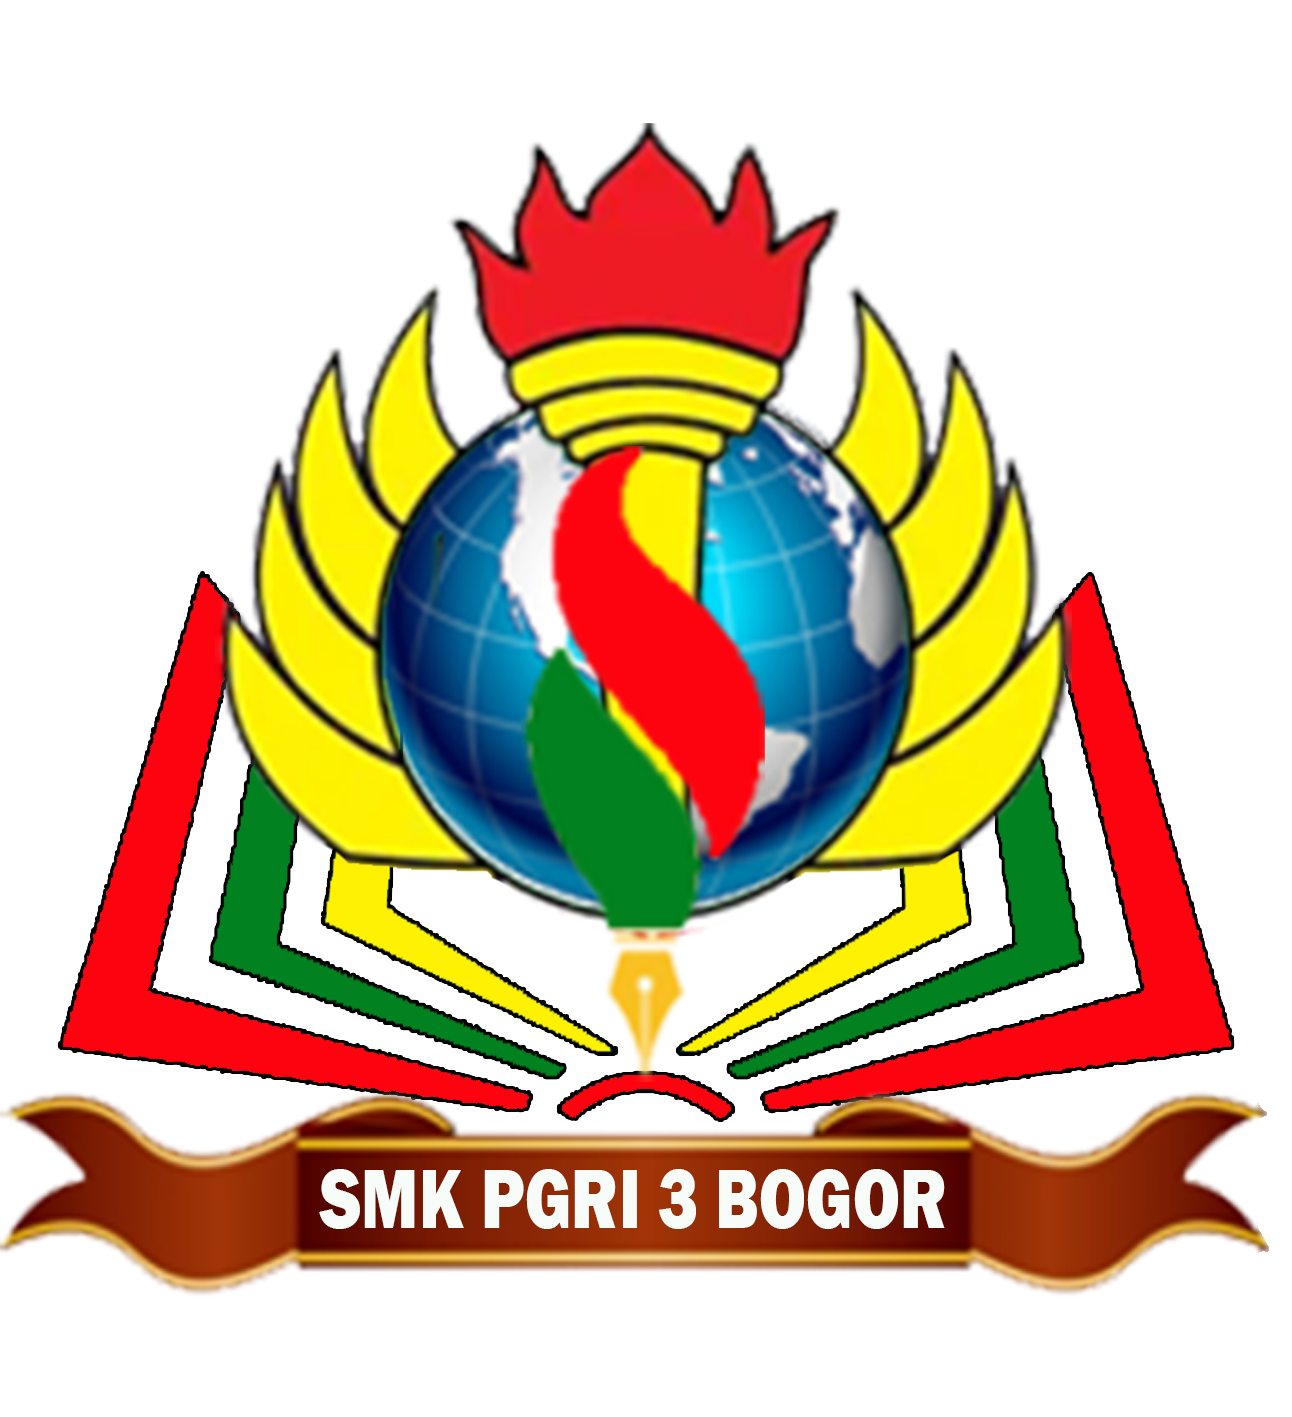 SMKS PGRI 3 BOGOR